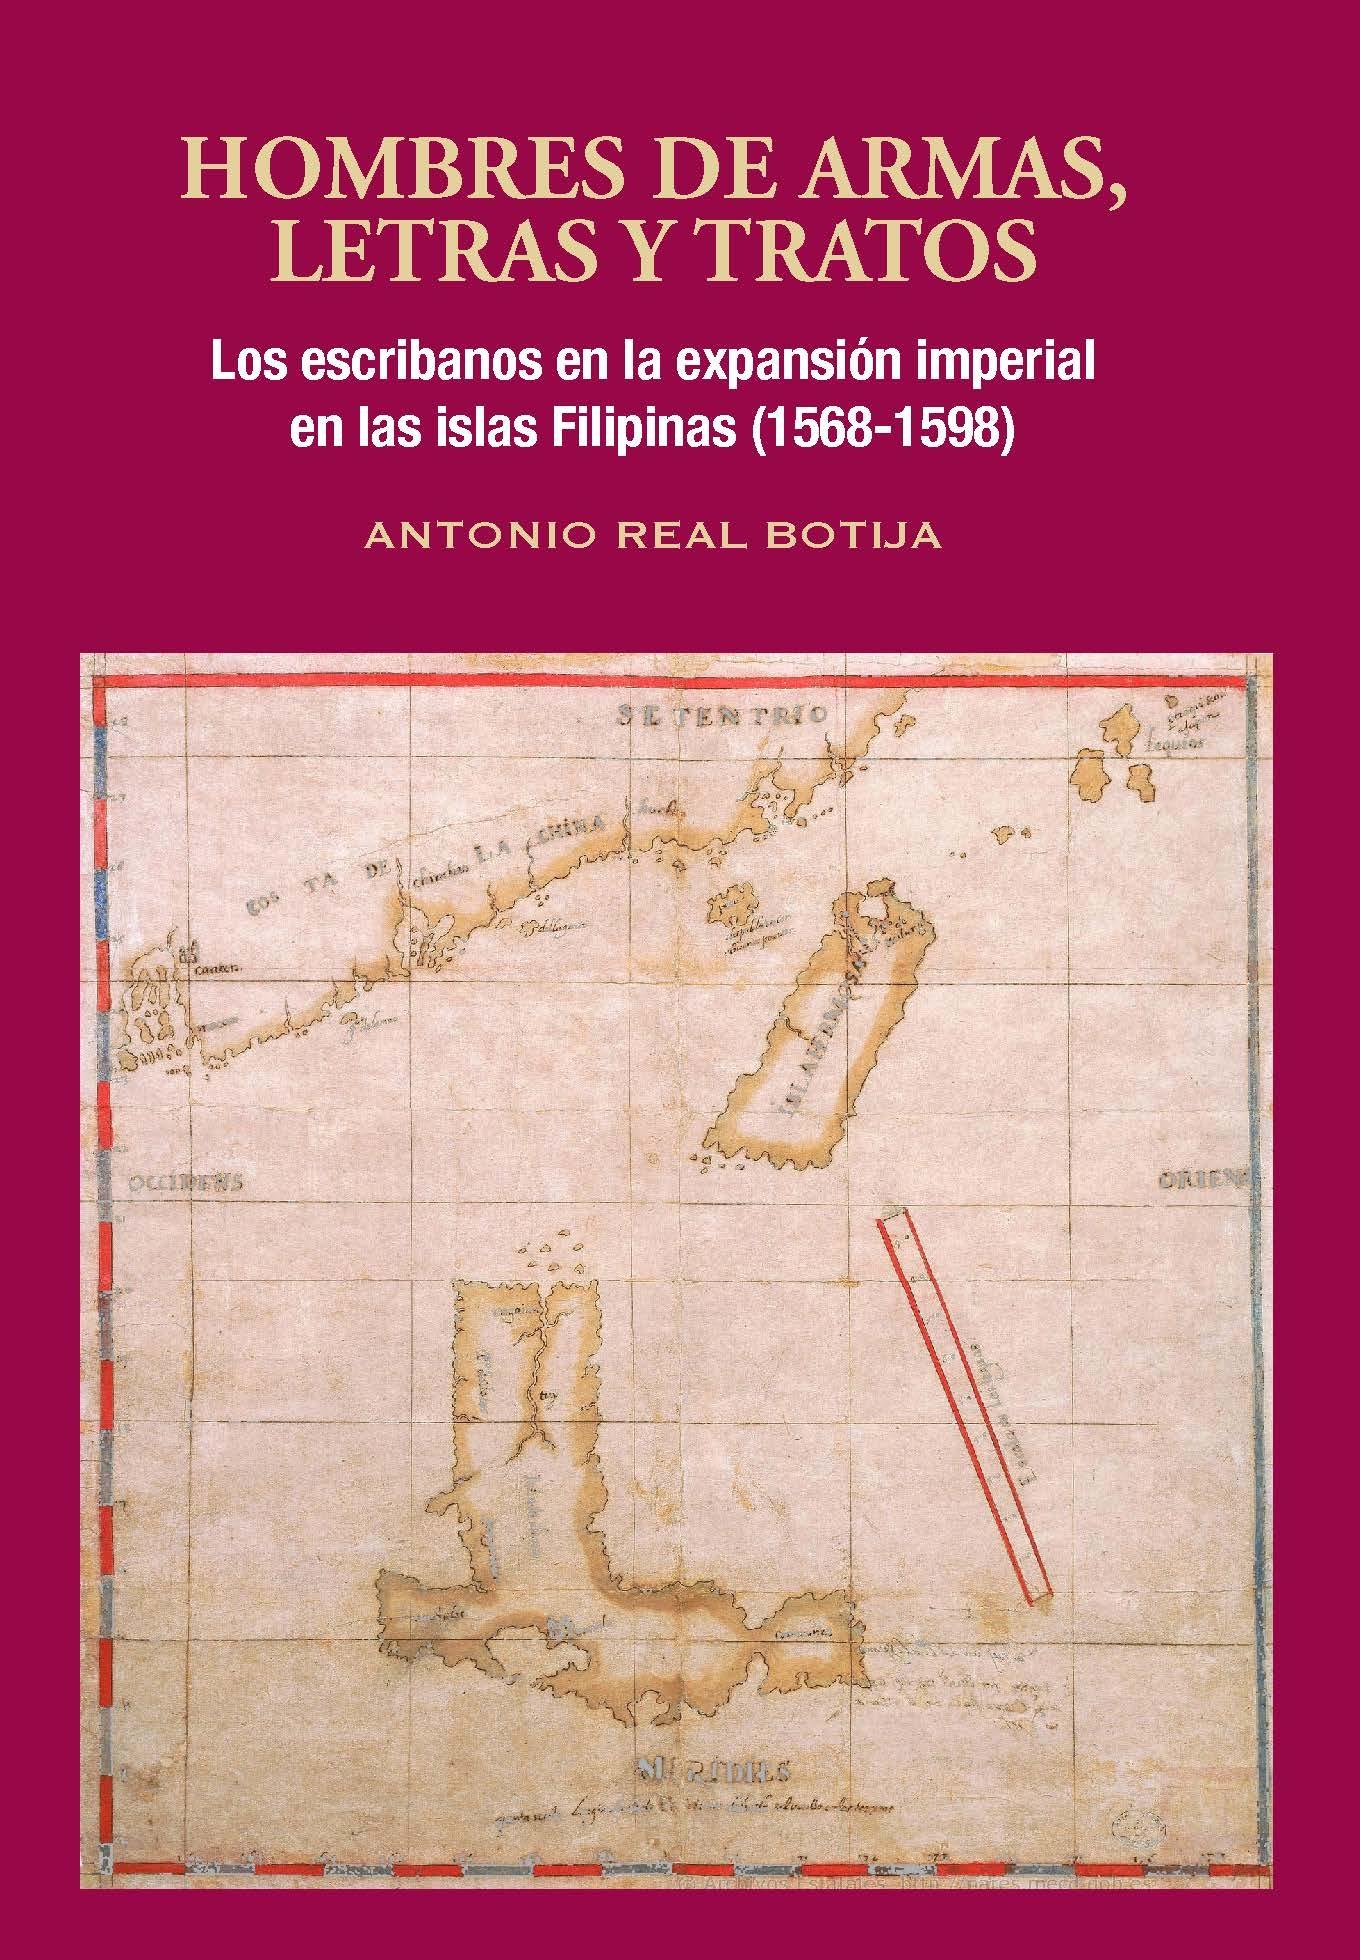 Hombres de armas, letras y tratos "Los escribanos en la expansión imperial en las islas Filipinas (1568-1598)"